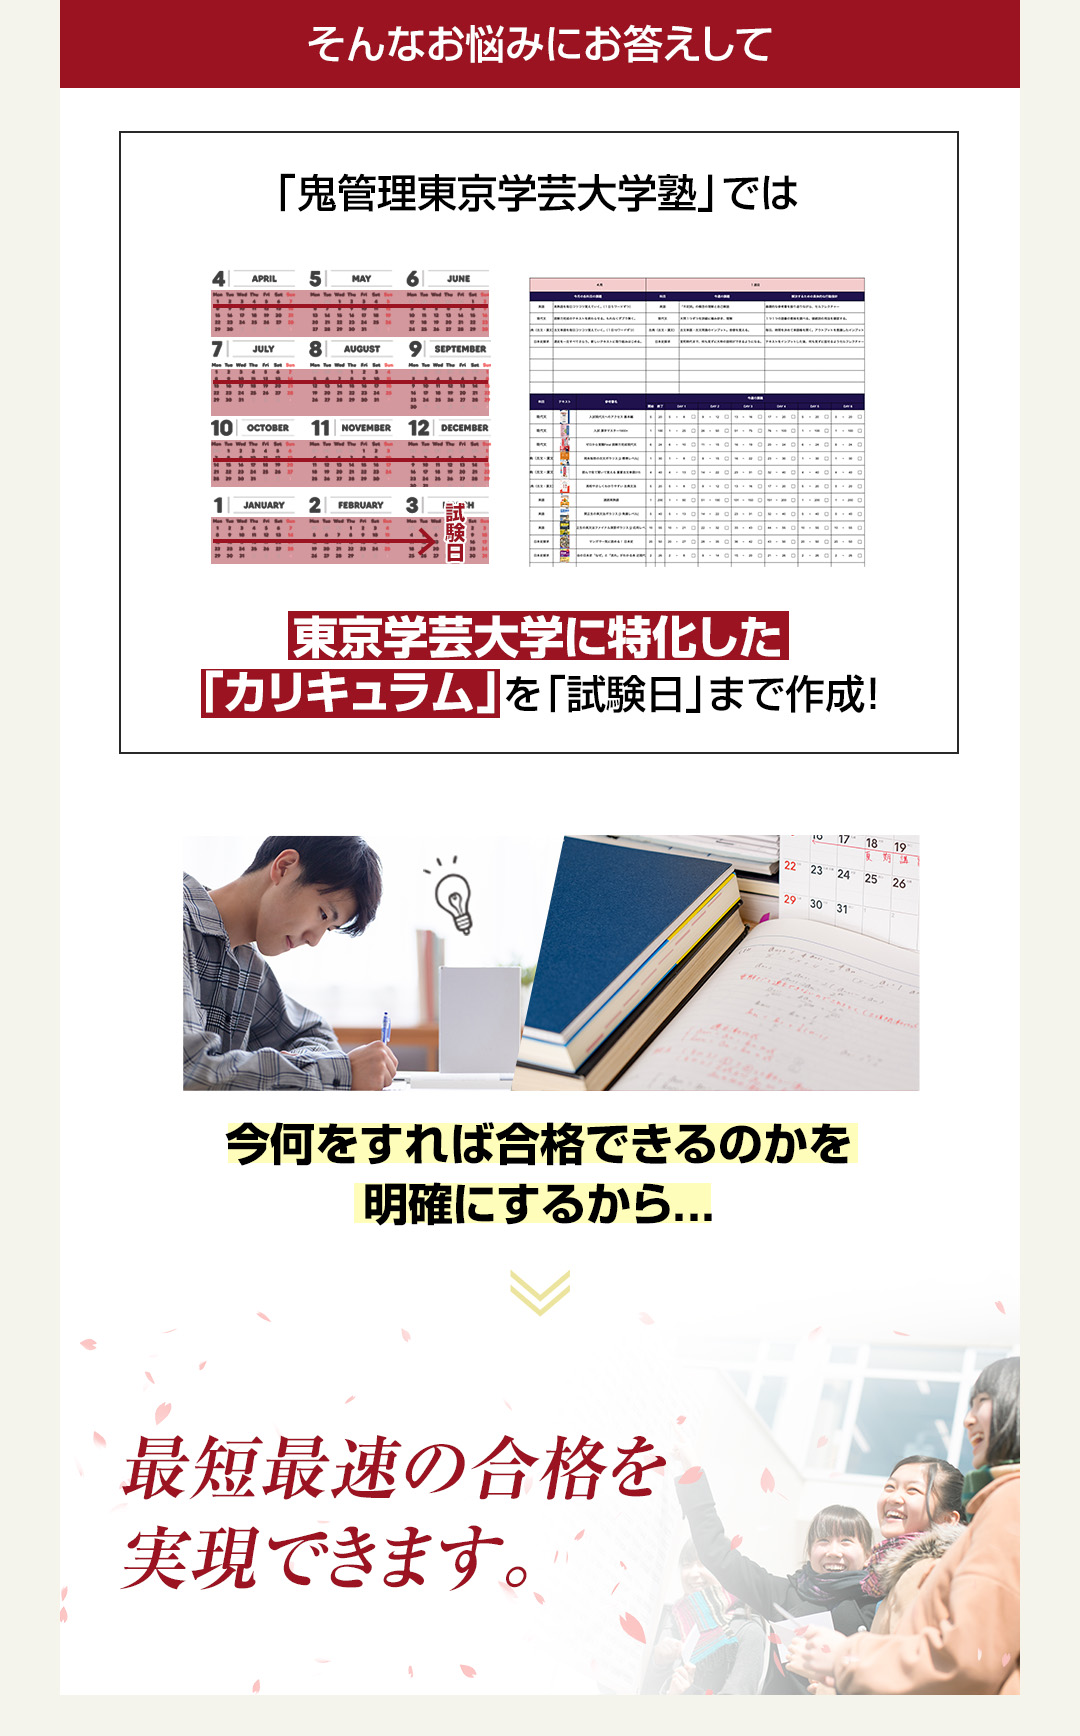 「鬼管理東京学芸大学塾」では東京学芸大学に特化した「カリキュラム」を「試験日」まで作成